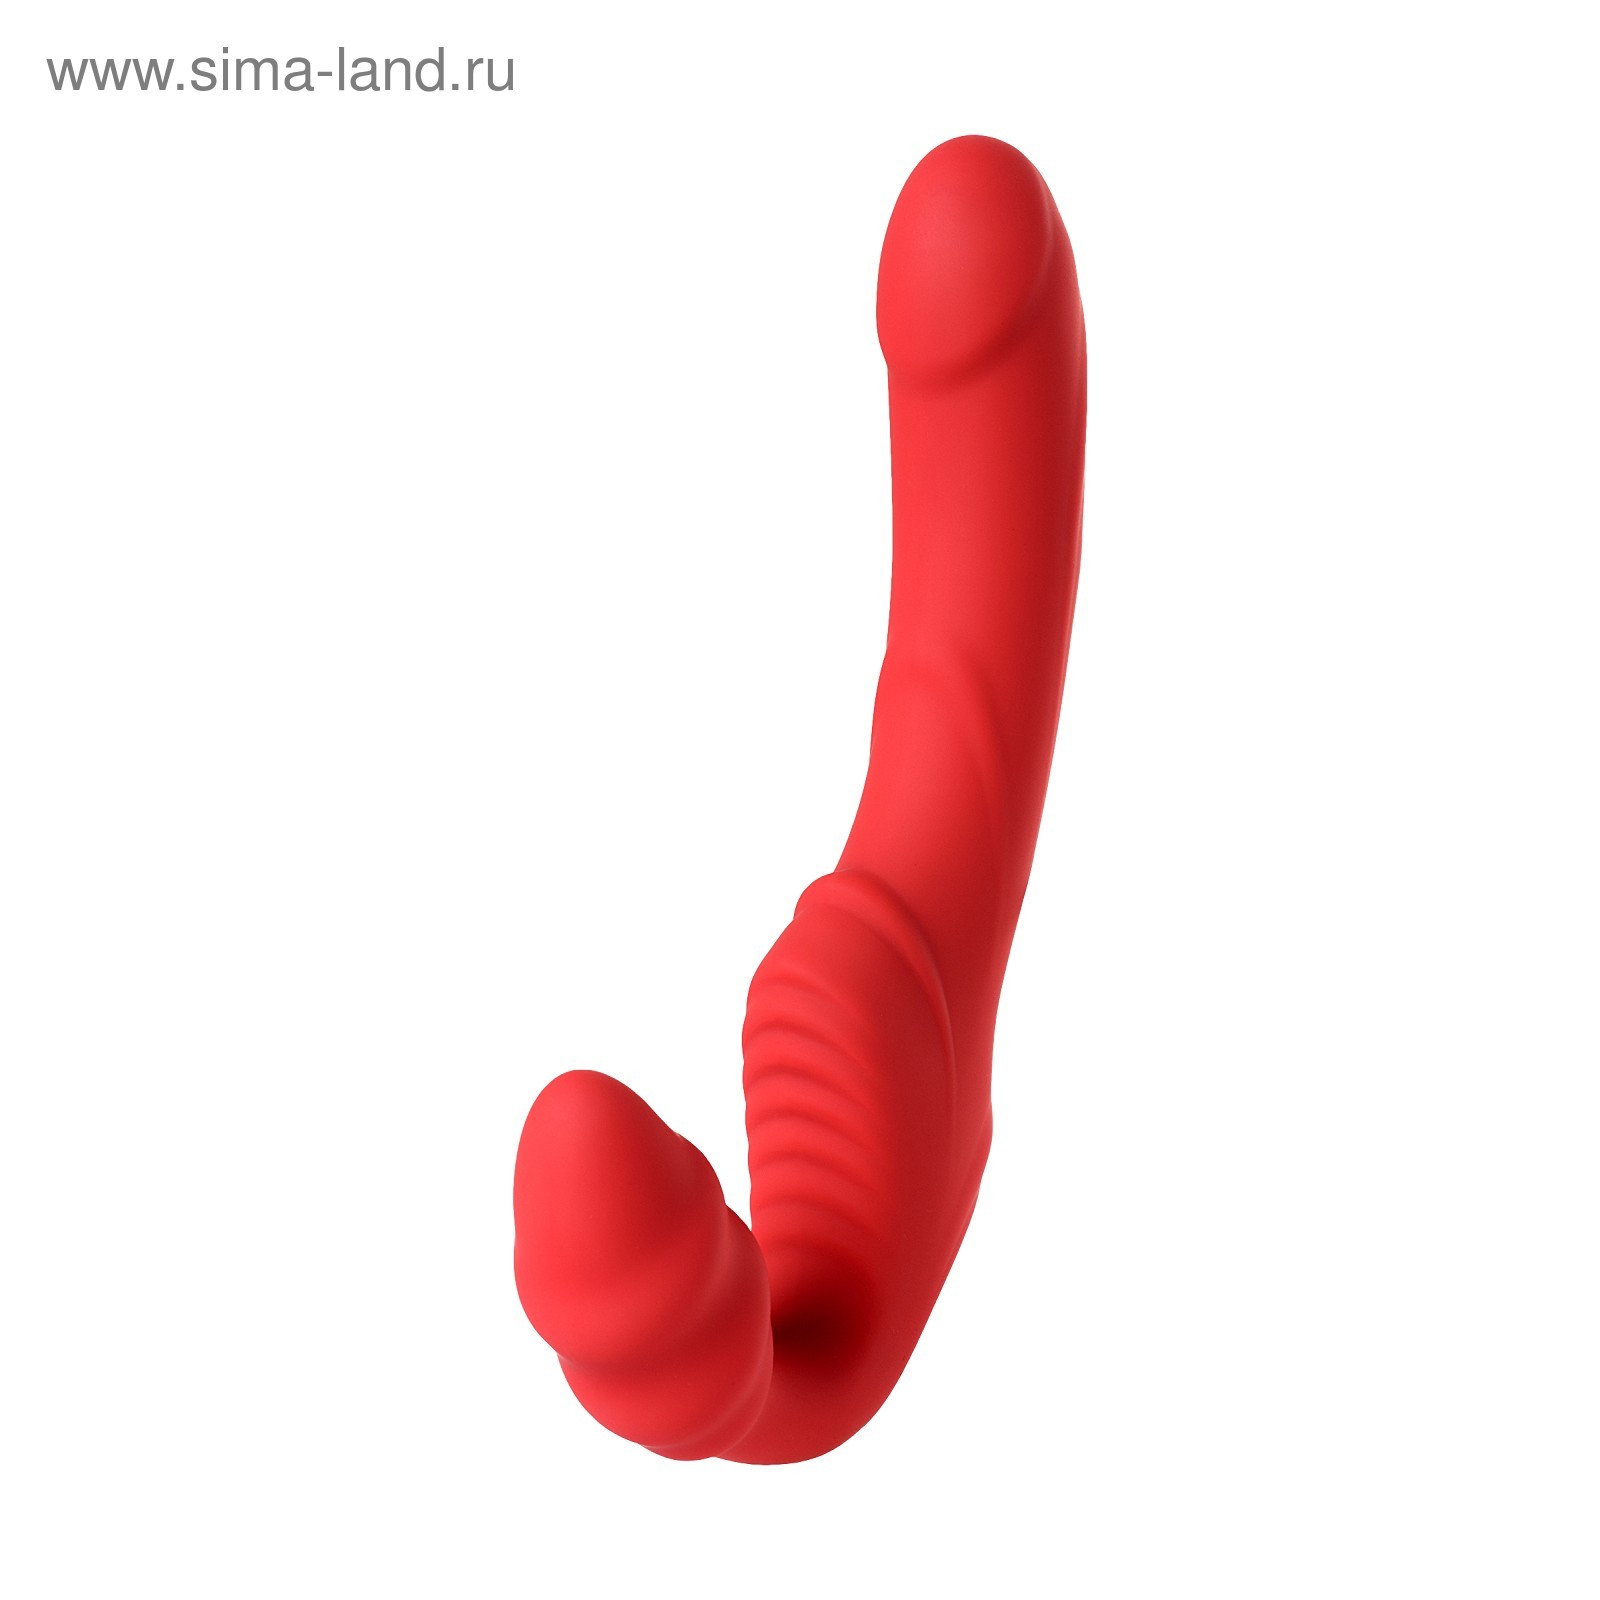 Безремневой страпон Black & Red by Toyfa с вибрацией, красный, 35 см (0T-00013136) - Купить по цене от 4 570.00 руб. | Интернет магазин SIMA-LAND.RU